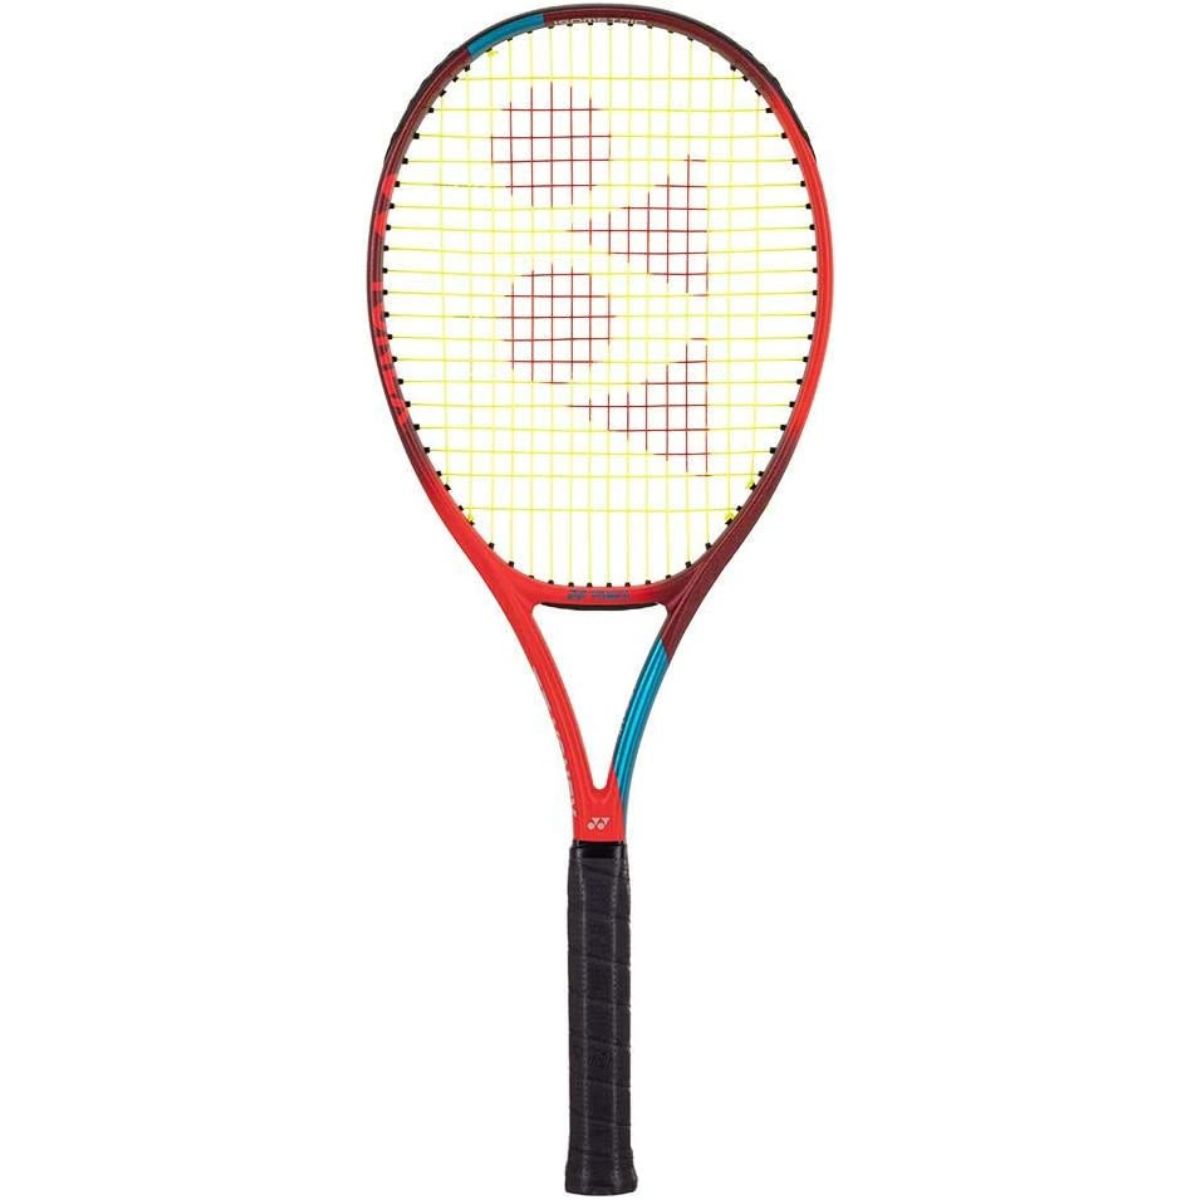 Yonex VCORE 98 Plus tennis racket review